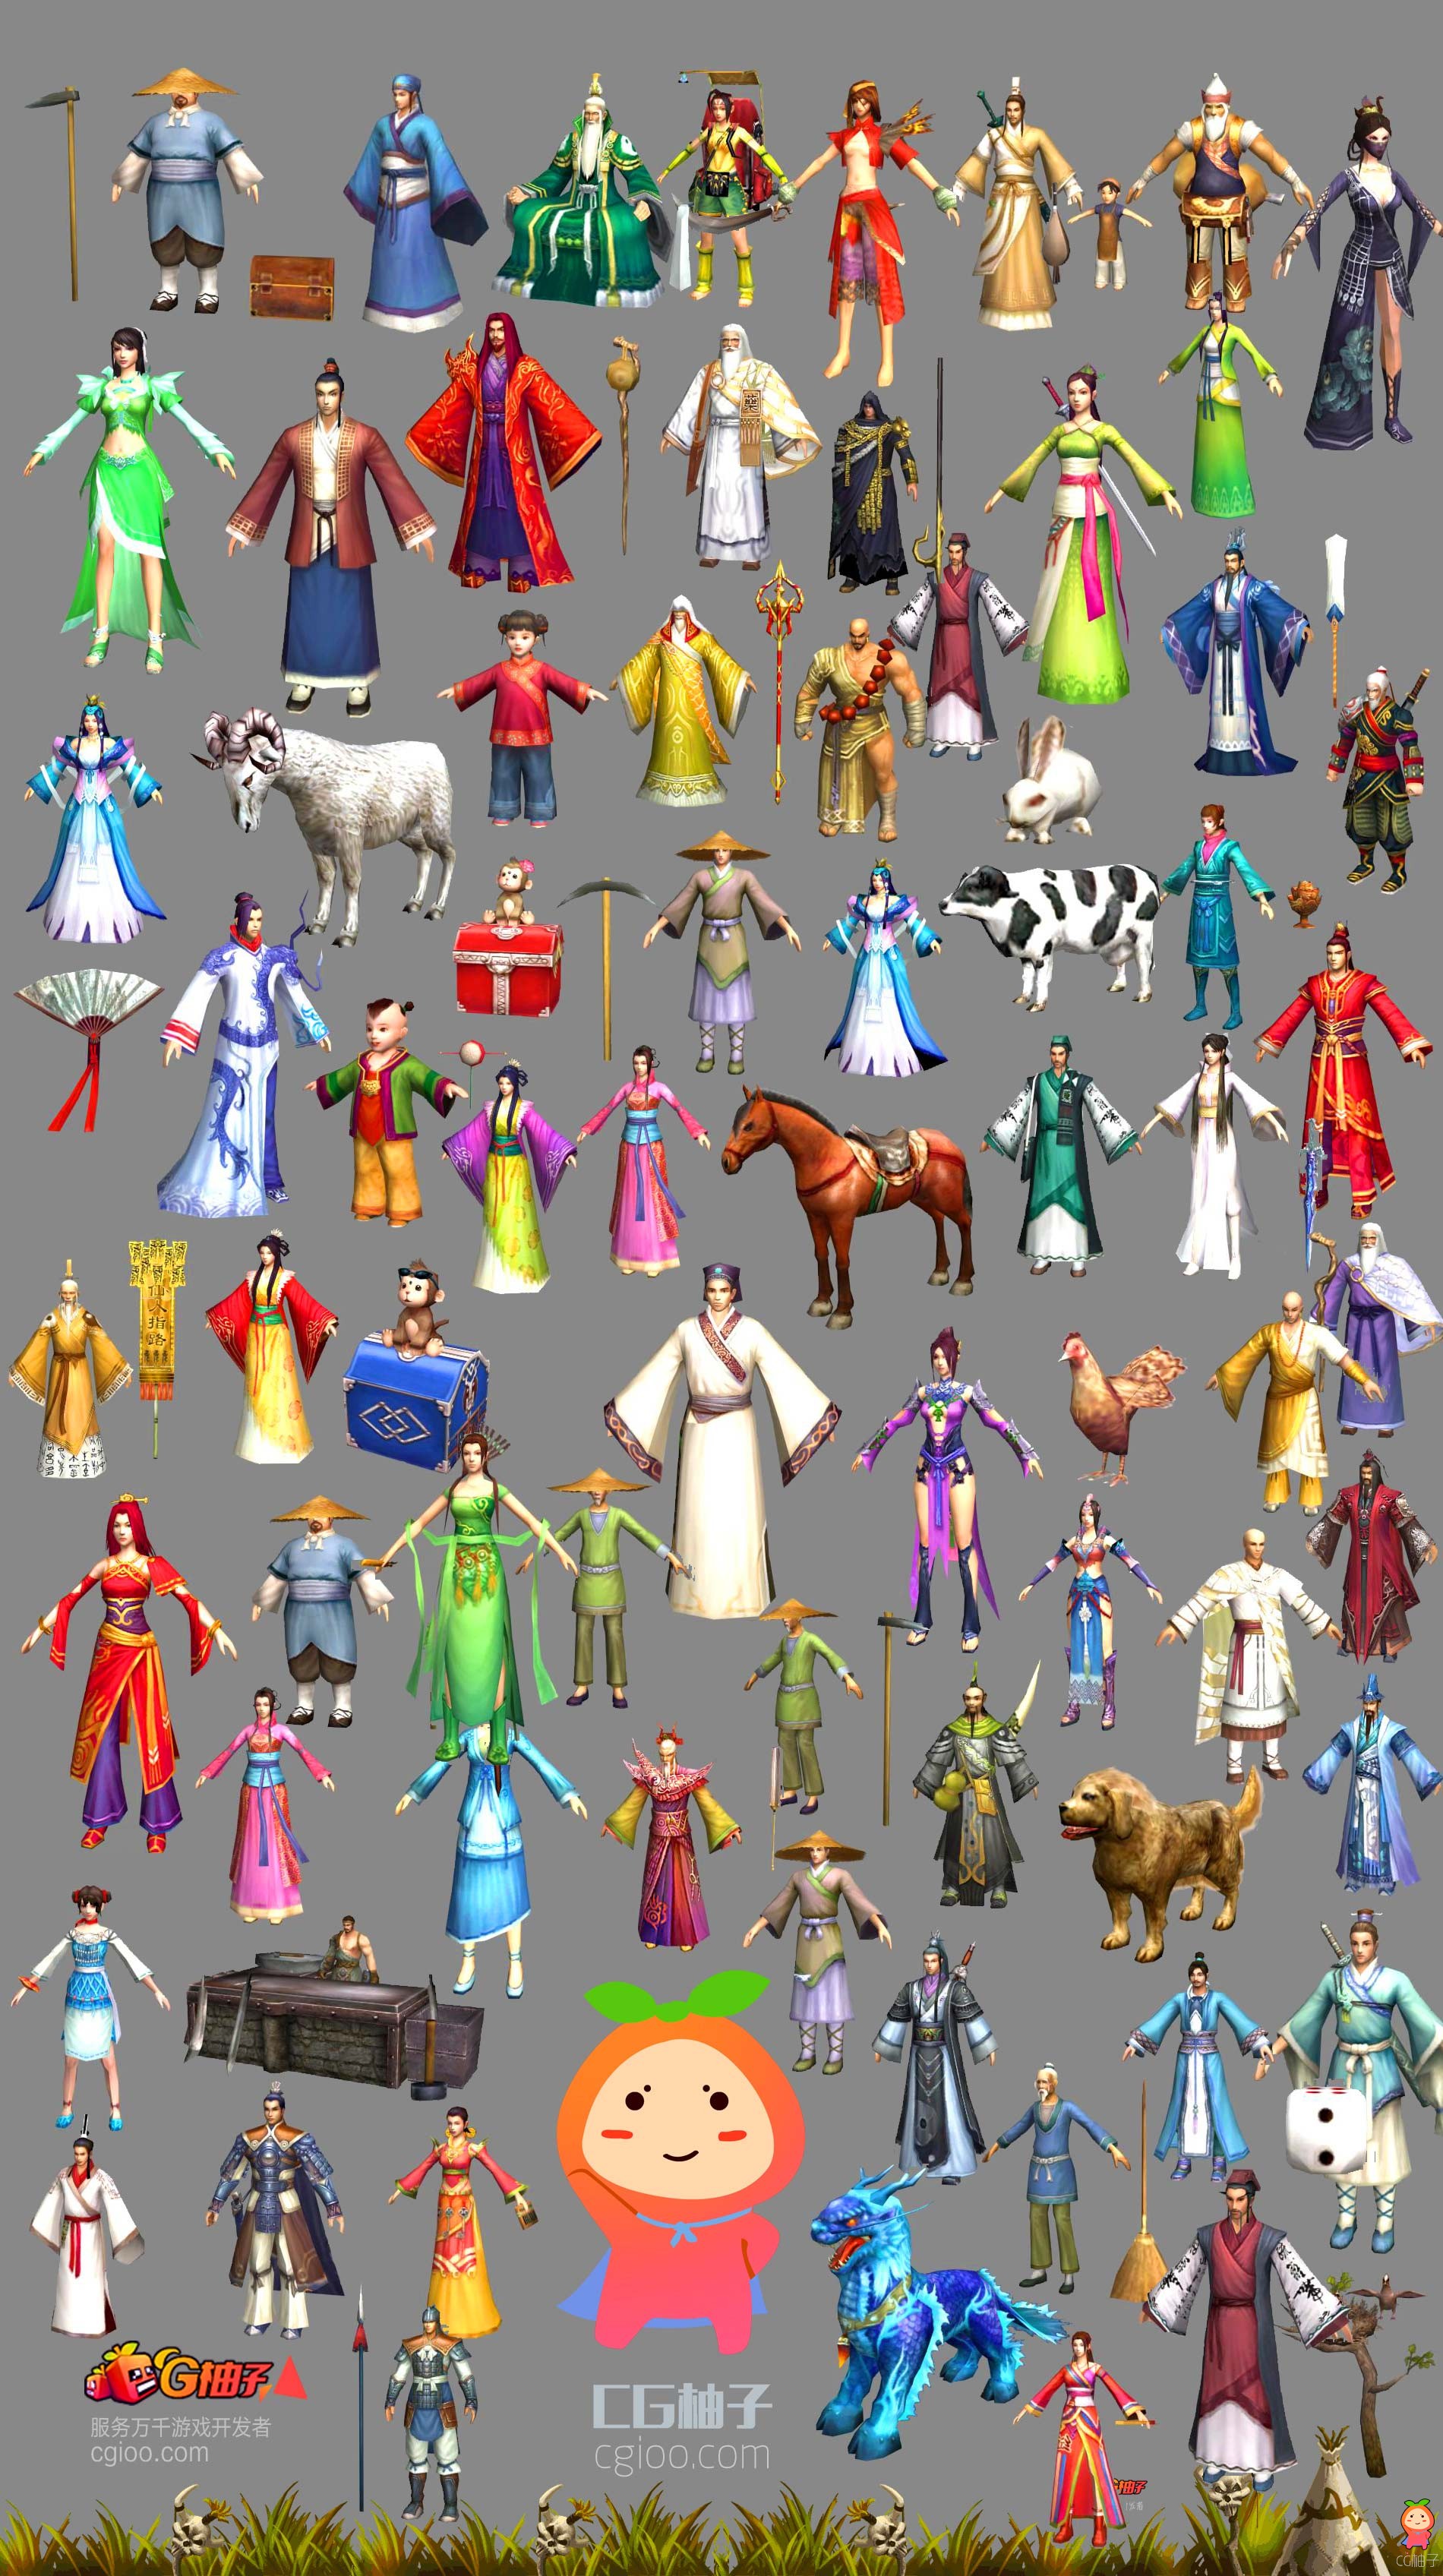 《诛仙》游戏中75个人物模型NPC3D模型【免费下载】